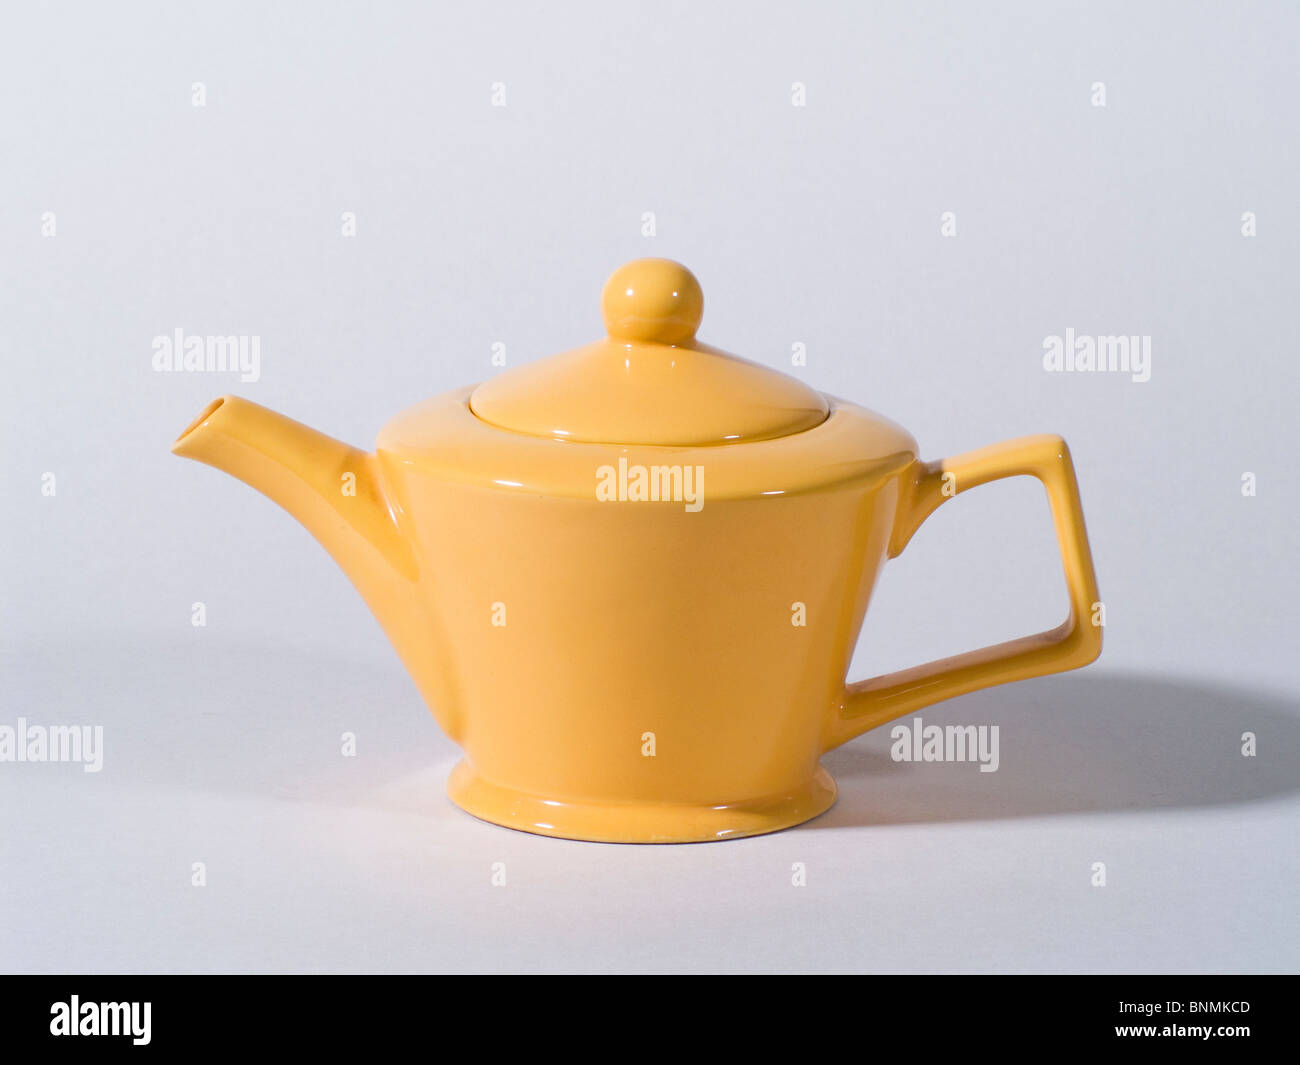 Yellow Teapot on Grey Background Stock Photo